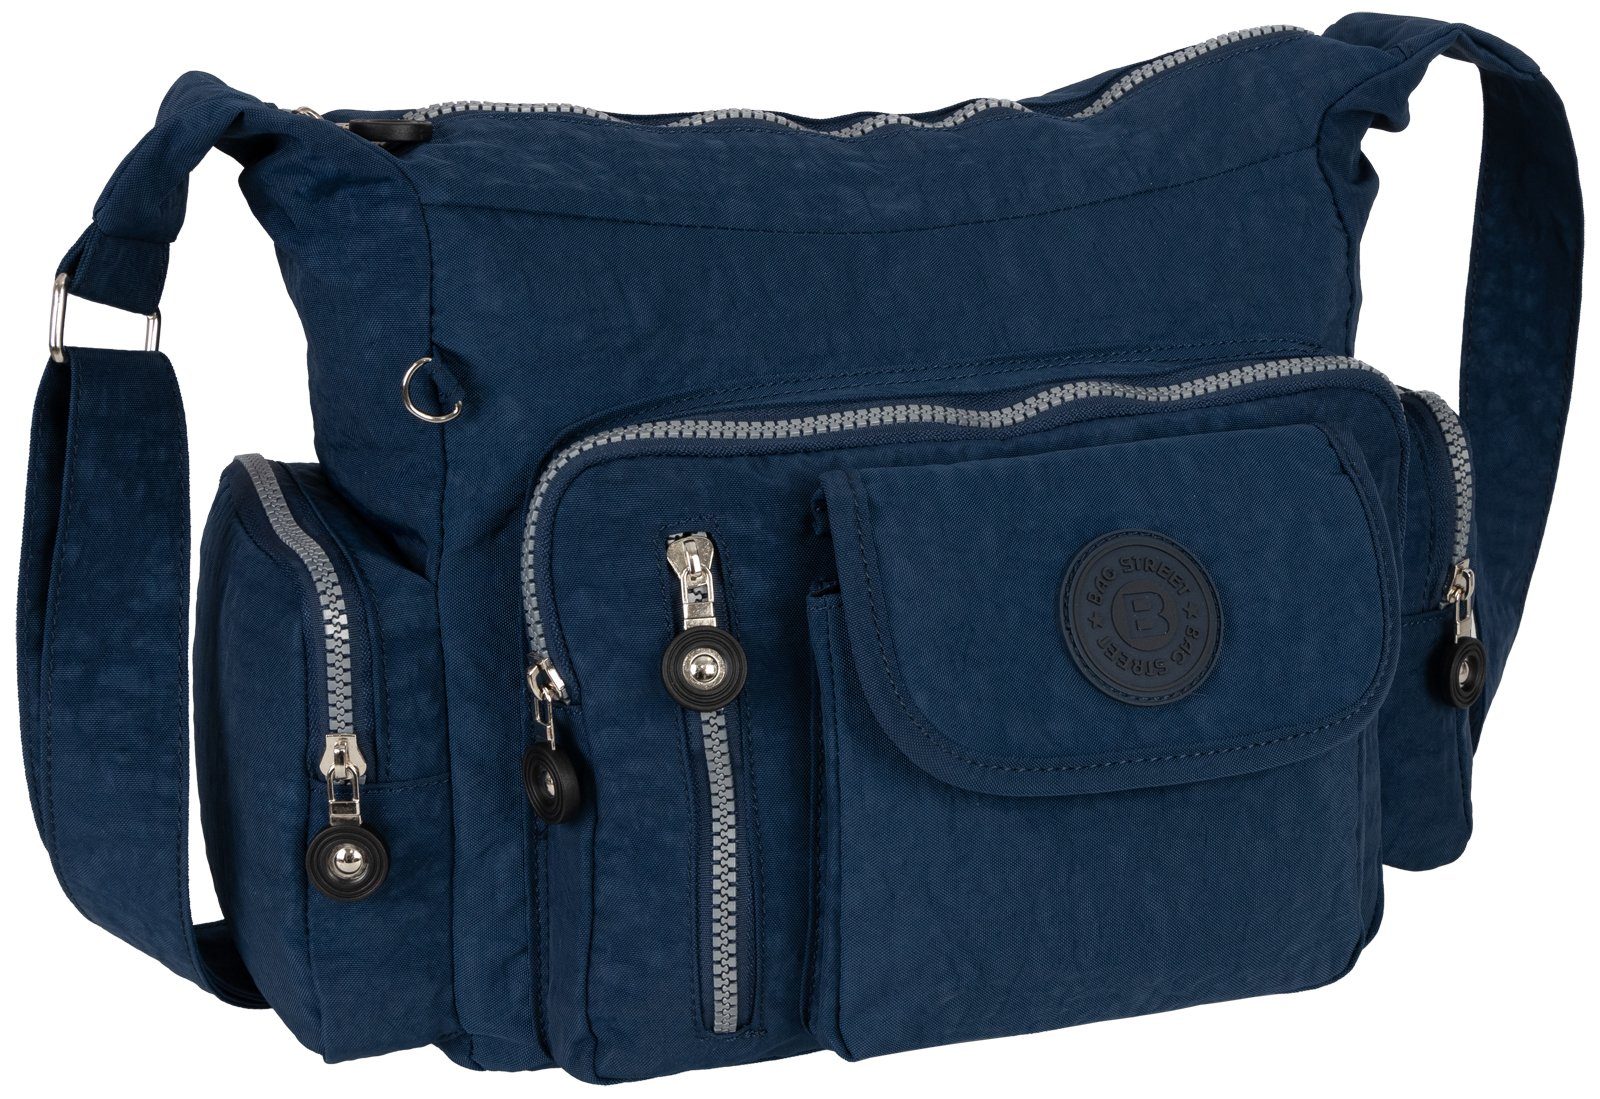 BAG STREET Umhängetasche Damentasche Umhängetasche Handtasche Schultertasche Taupe, als Schultertasche, Umhängetasche tragbar Blau